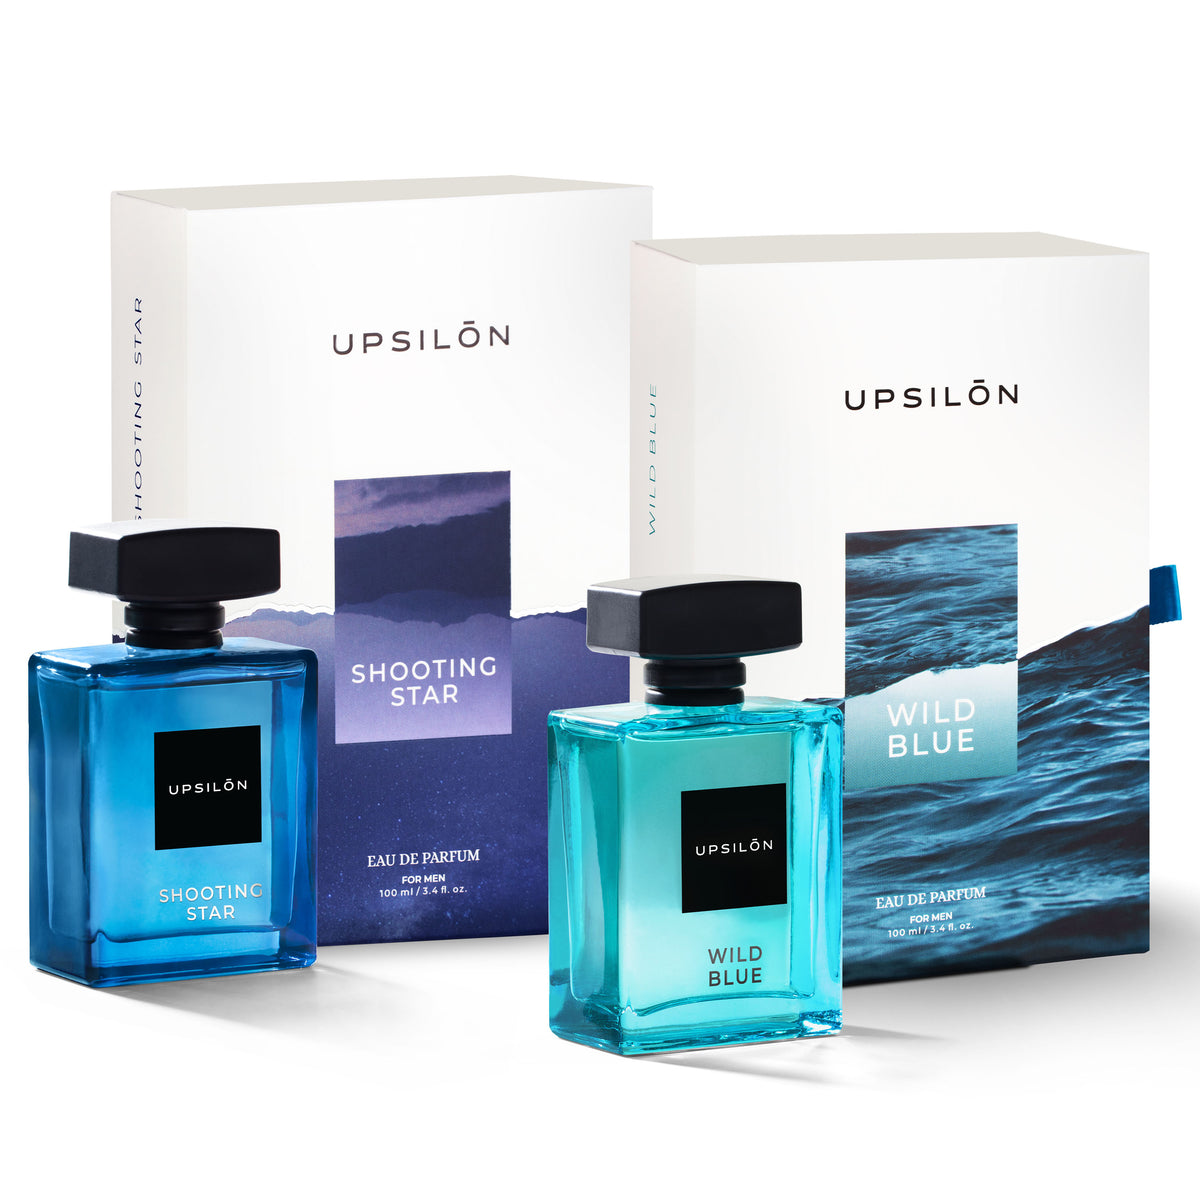 A gift set of two Upsilon Eau de Parfum fragrances, Shooting Star and Wild Blue, for men